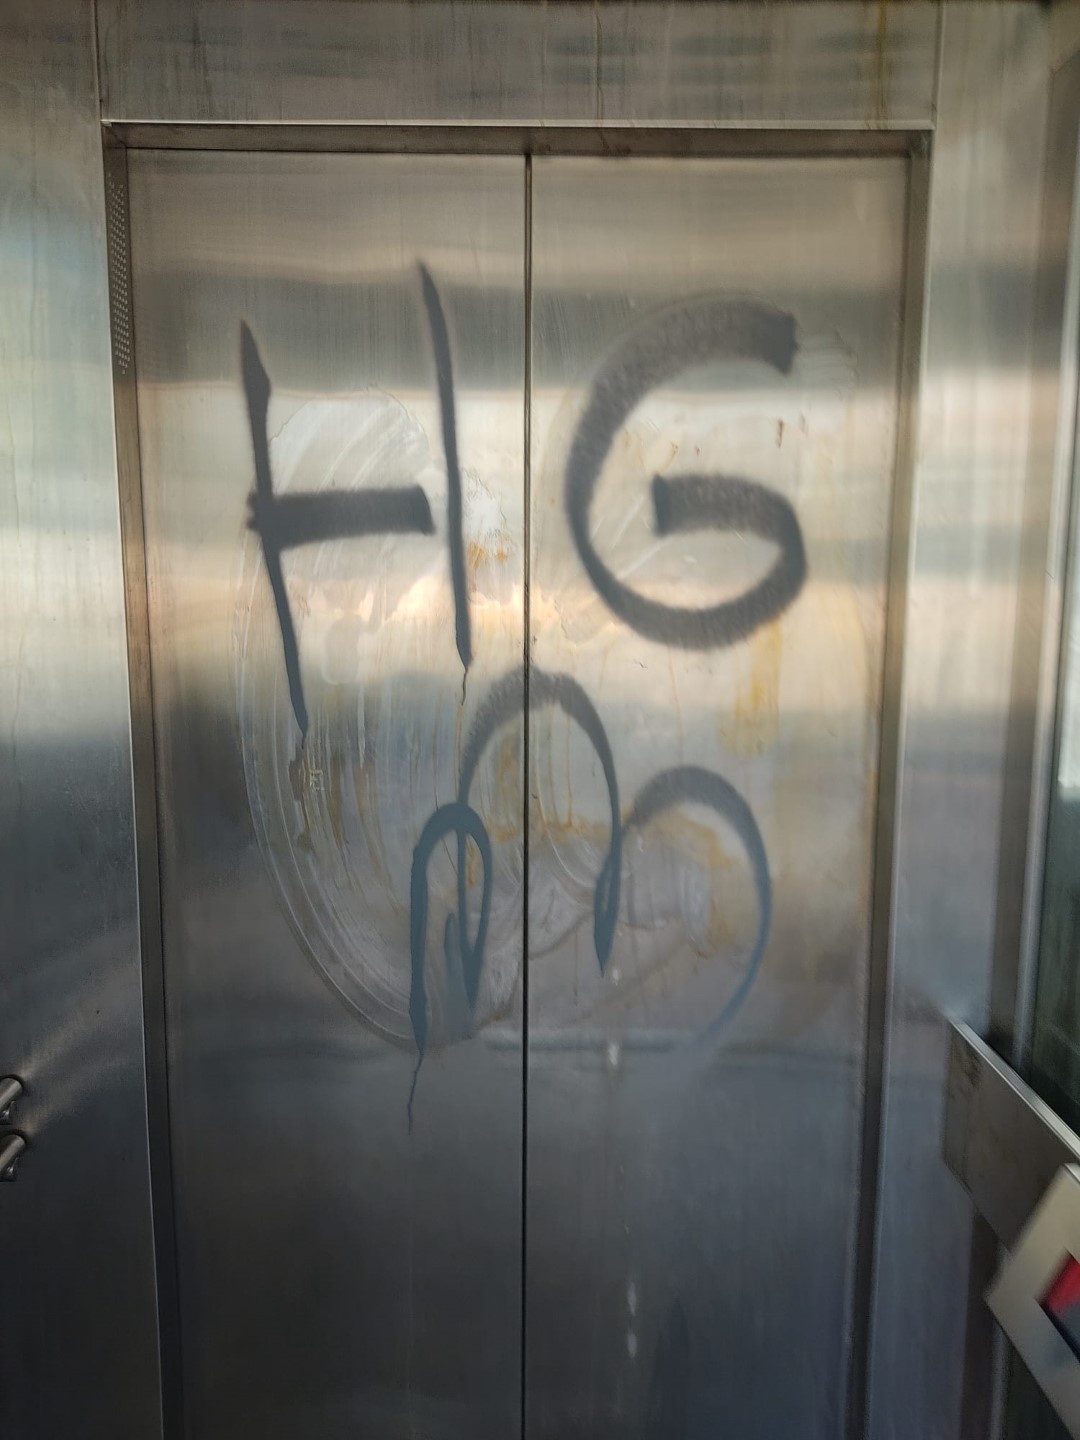 Asansörü boyayıp kapısını tekmelediler!